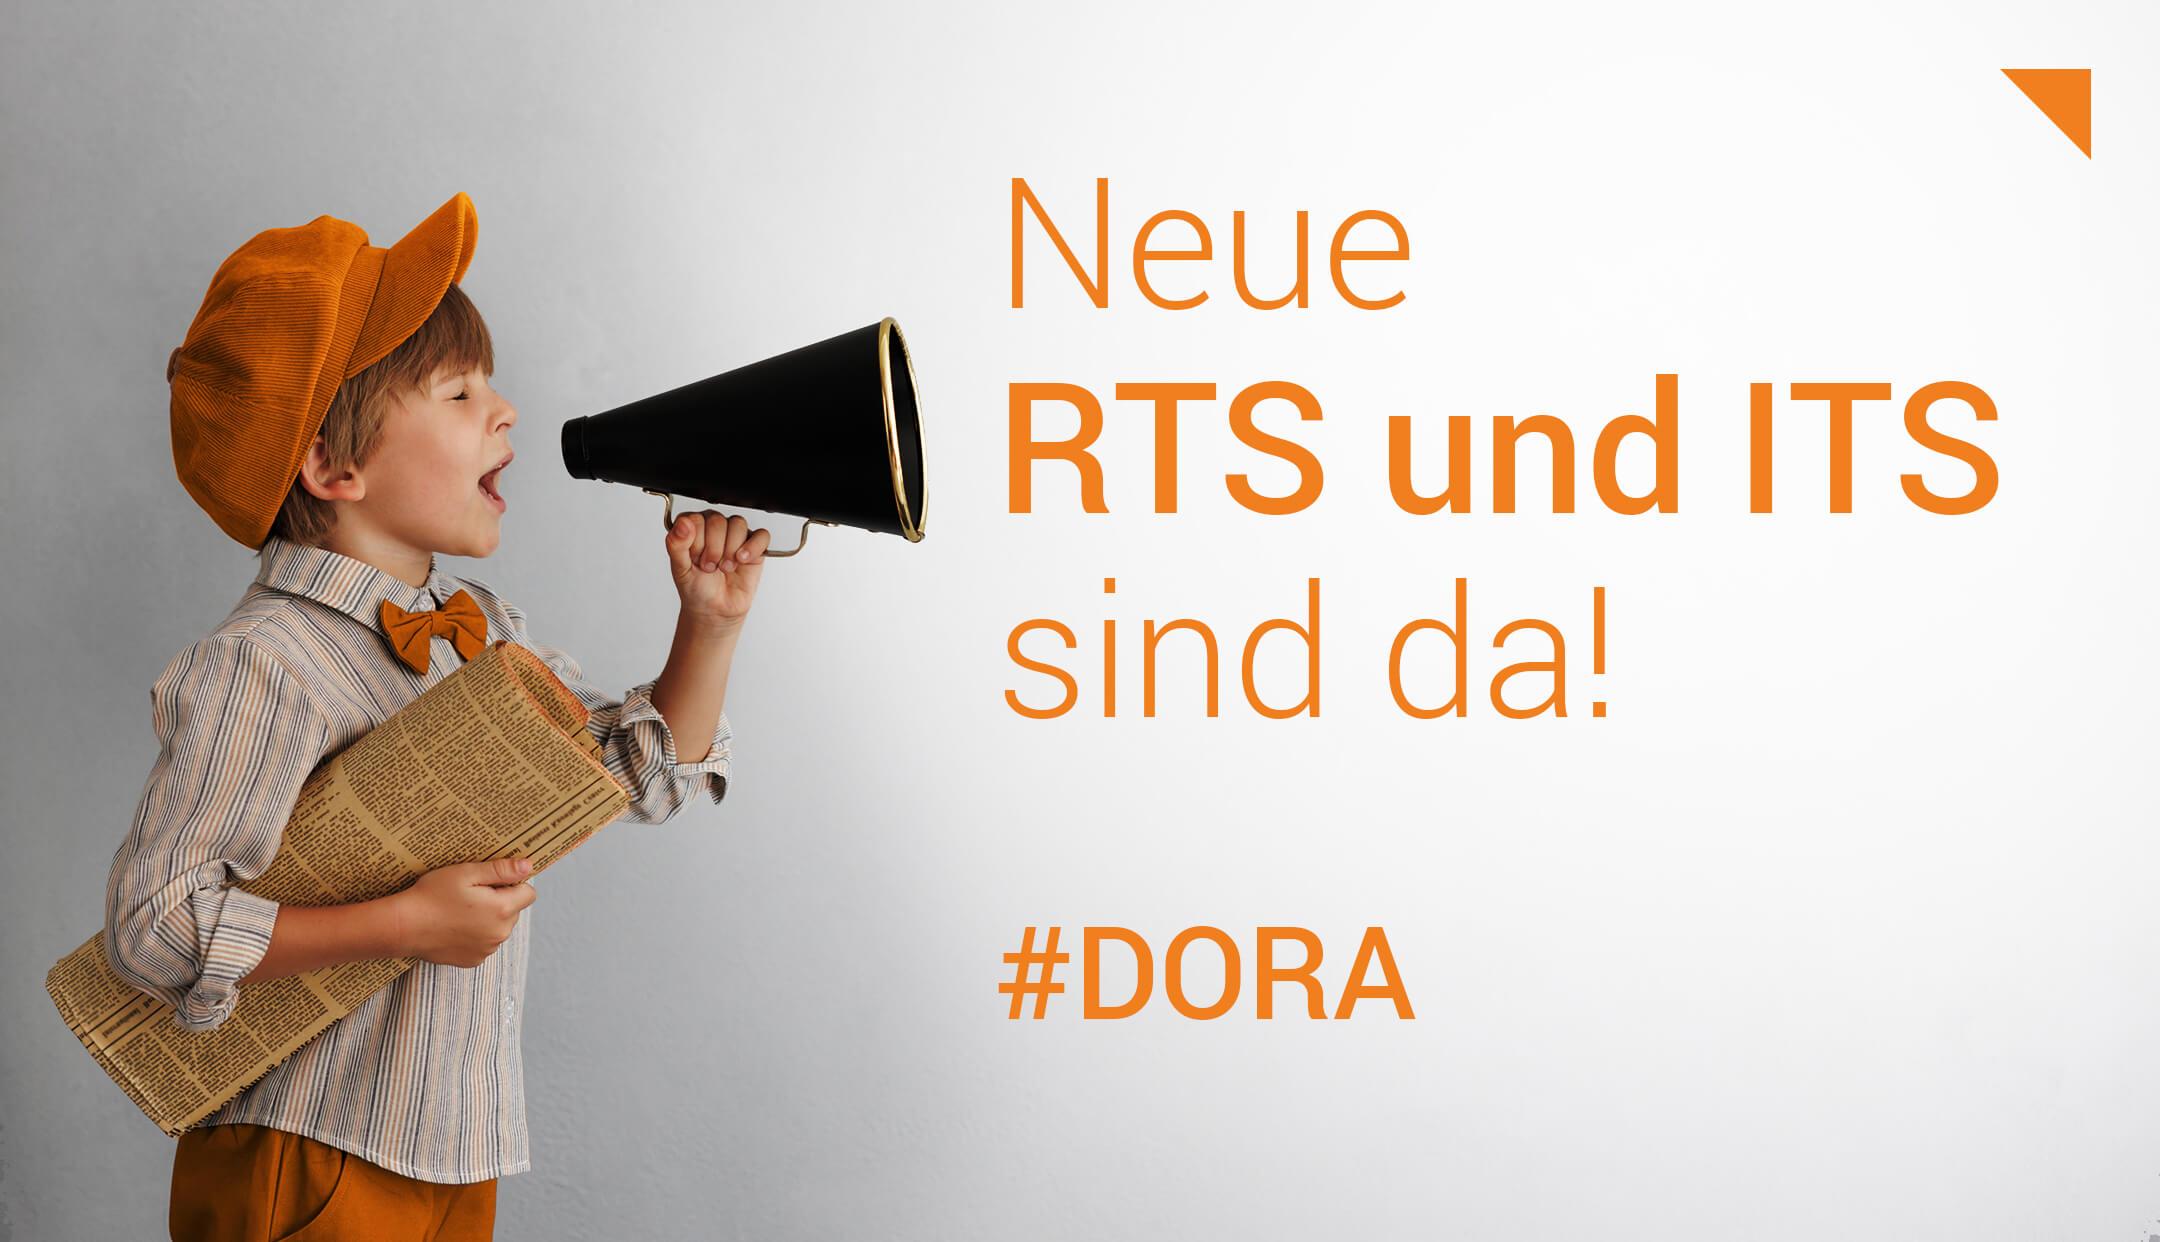 DORA-Anforderungen werden konkreter: Weitere RTS und ITS veröffentlicht